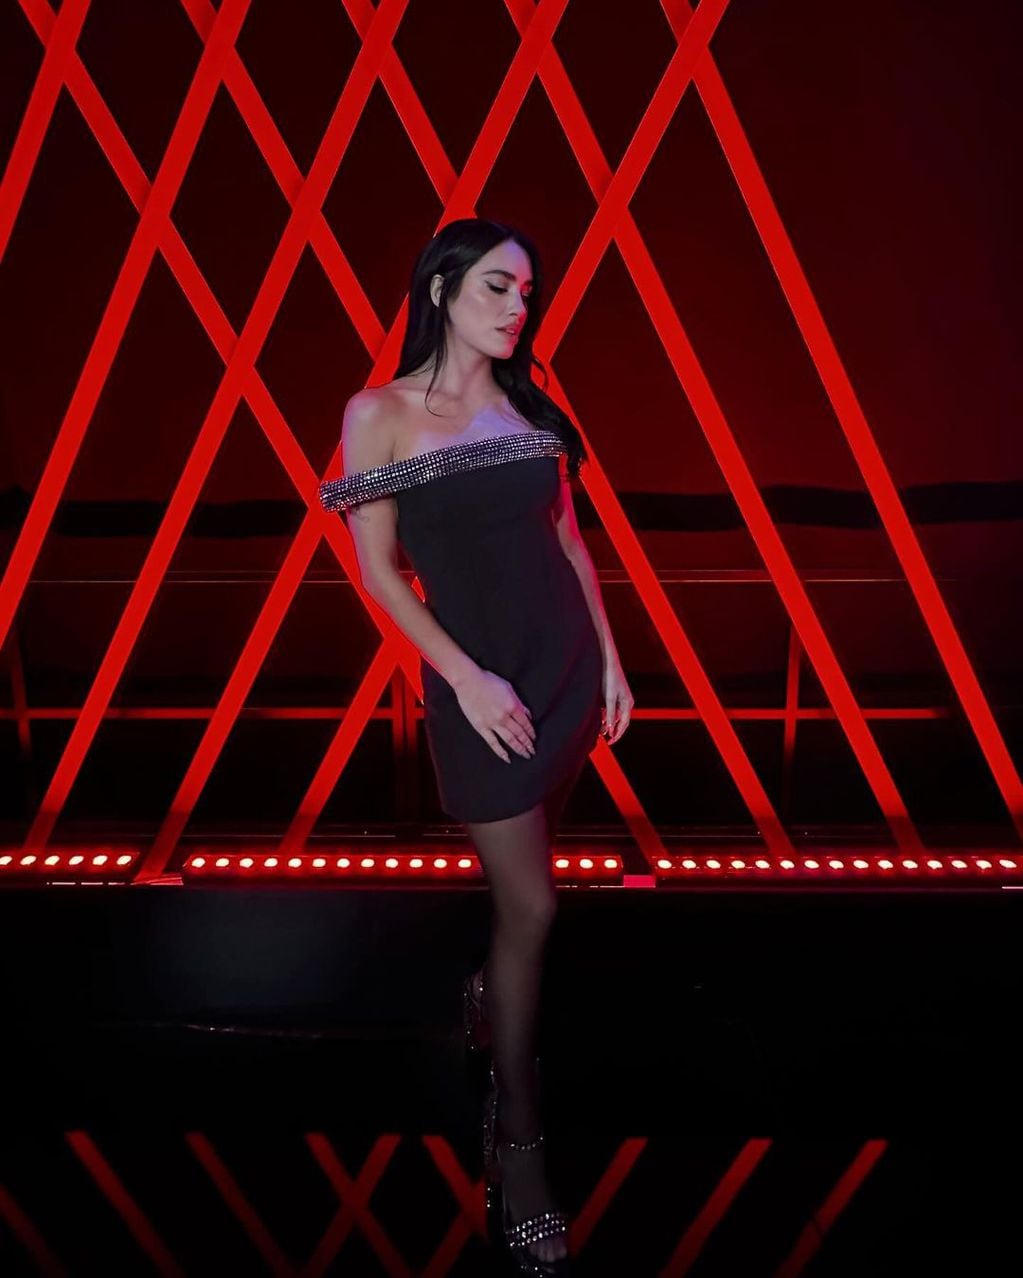 Brillos y espalda al descubierto: Lali cautivó con un vestido total black en “Factor X” de España